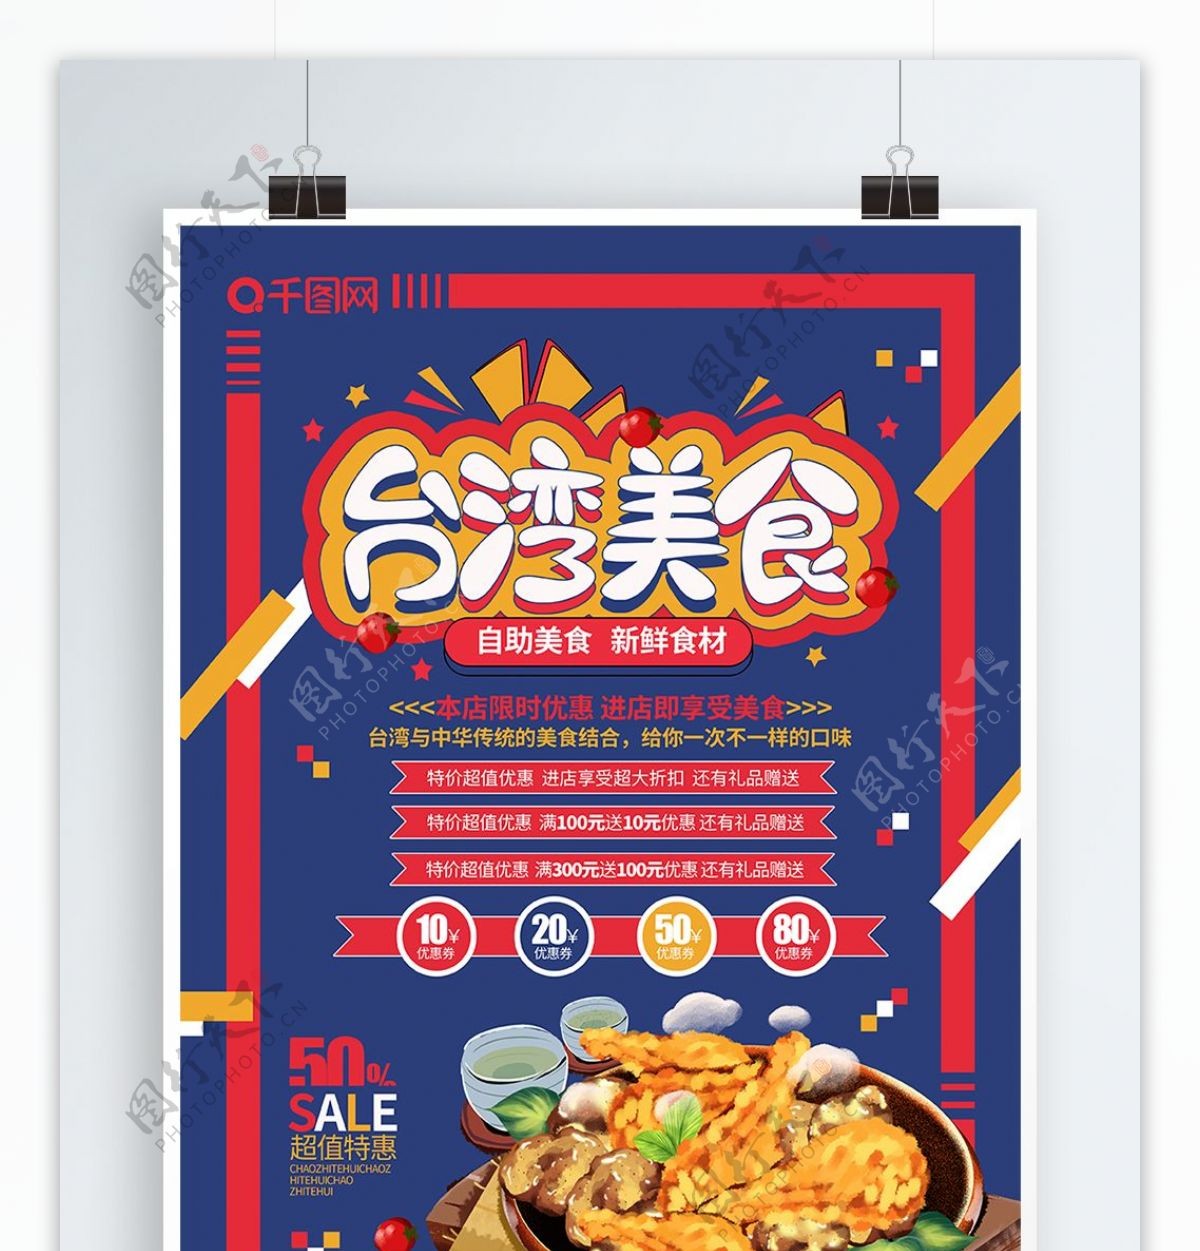 大气创意台湾美食促销海报